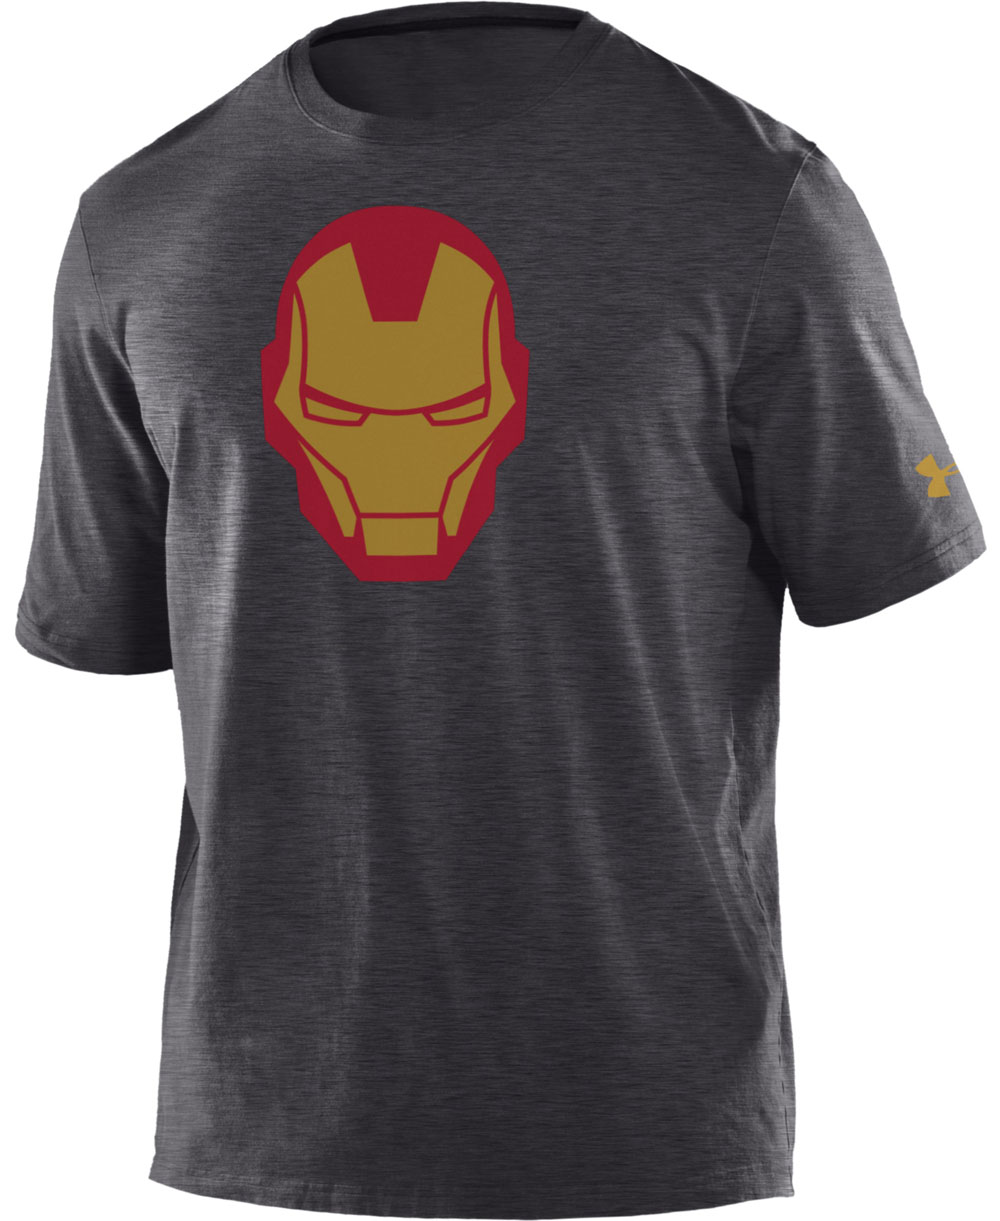 Kids Short Sleeve T-Shirt Alter Ego Iron Man